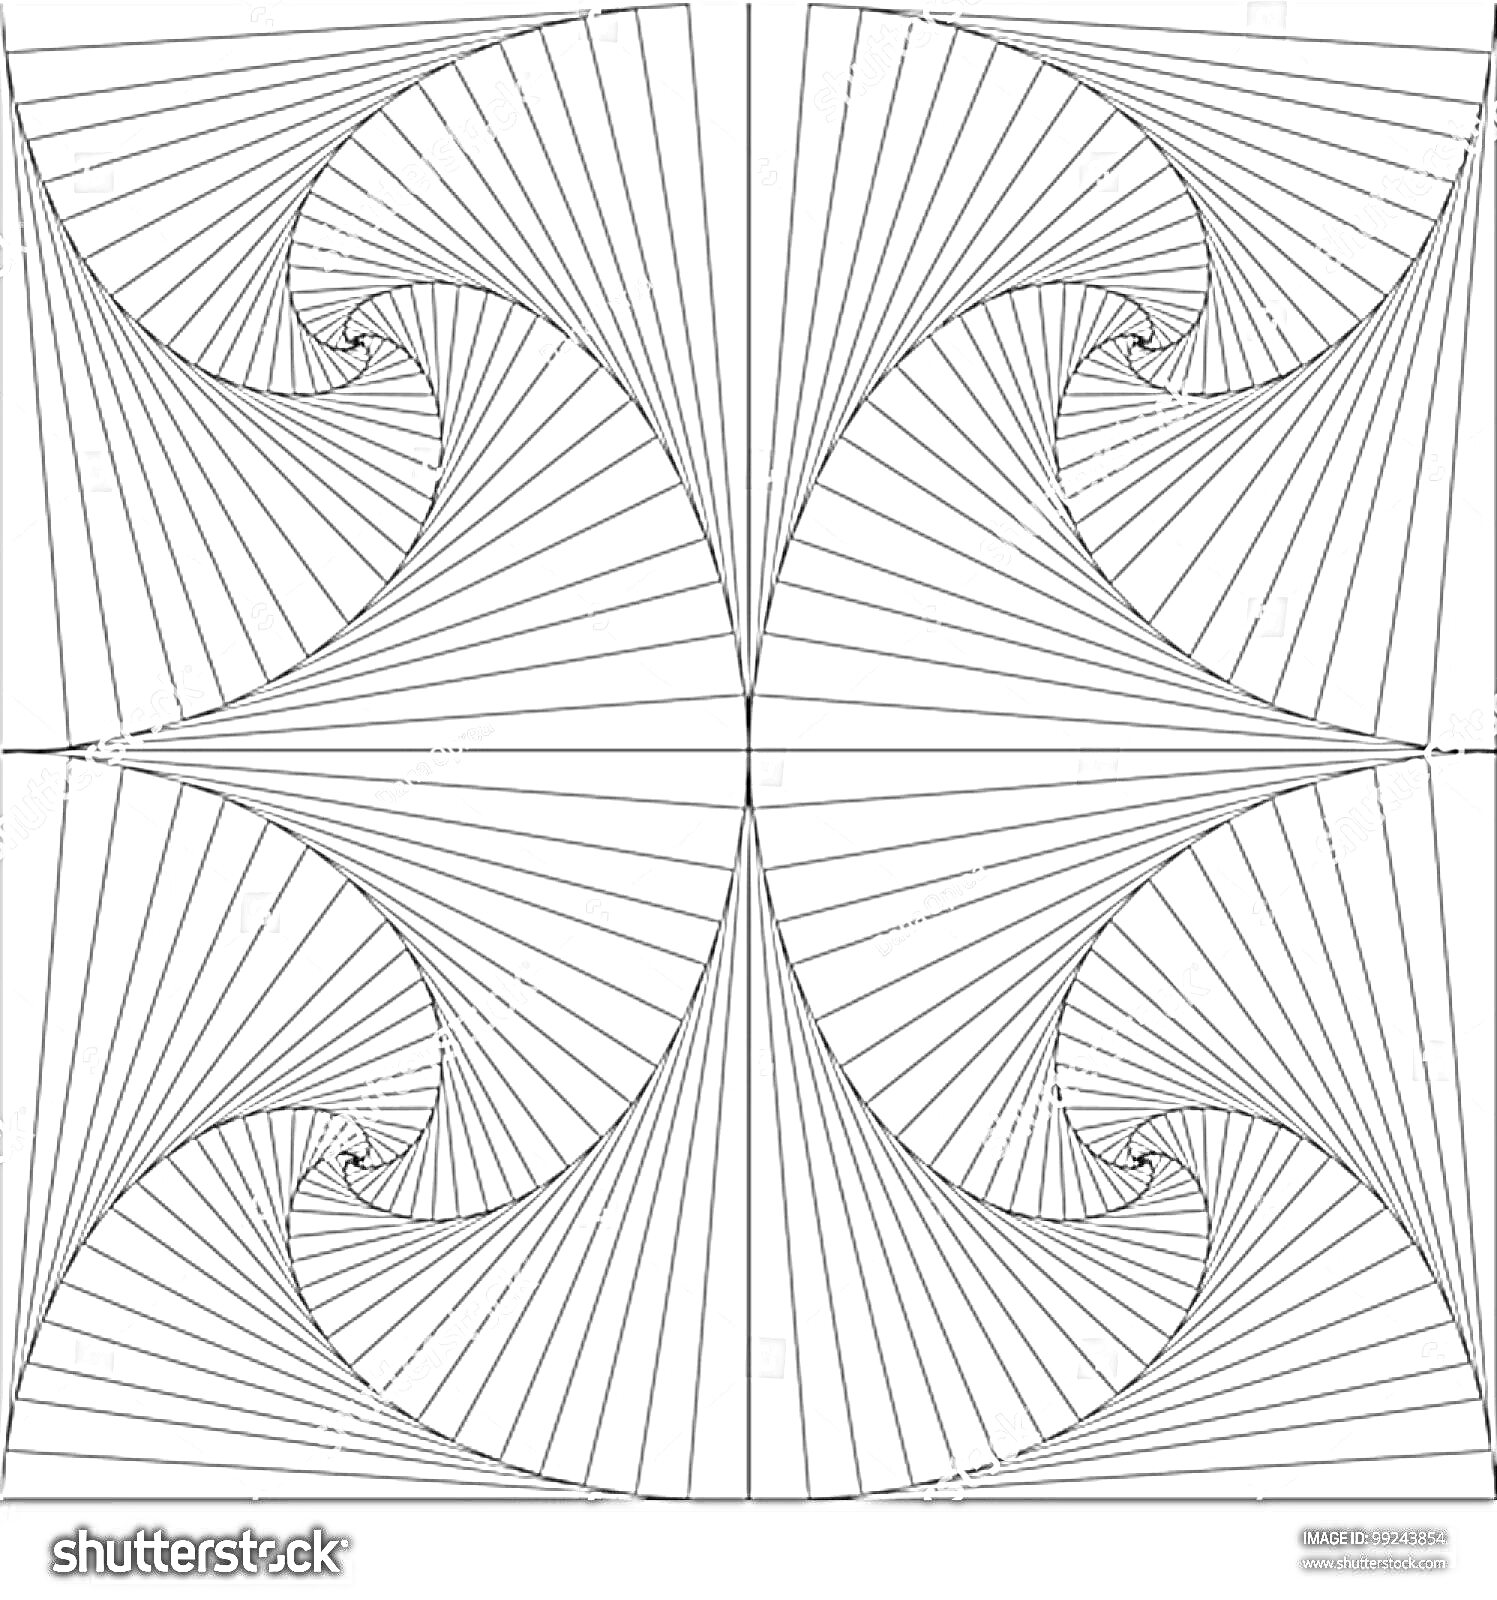 Раскраска Геометрические узоры с плавными линиями, радиальные и спиральные мотивы